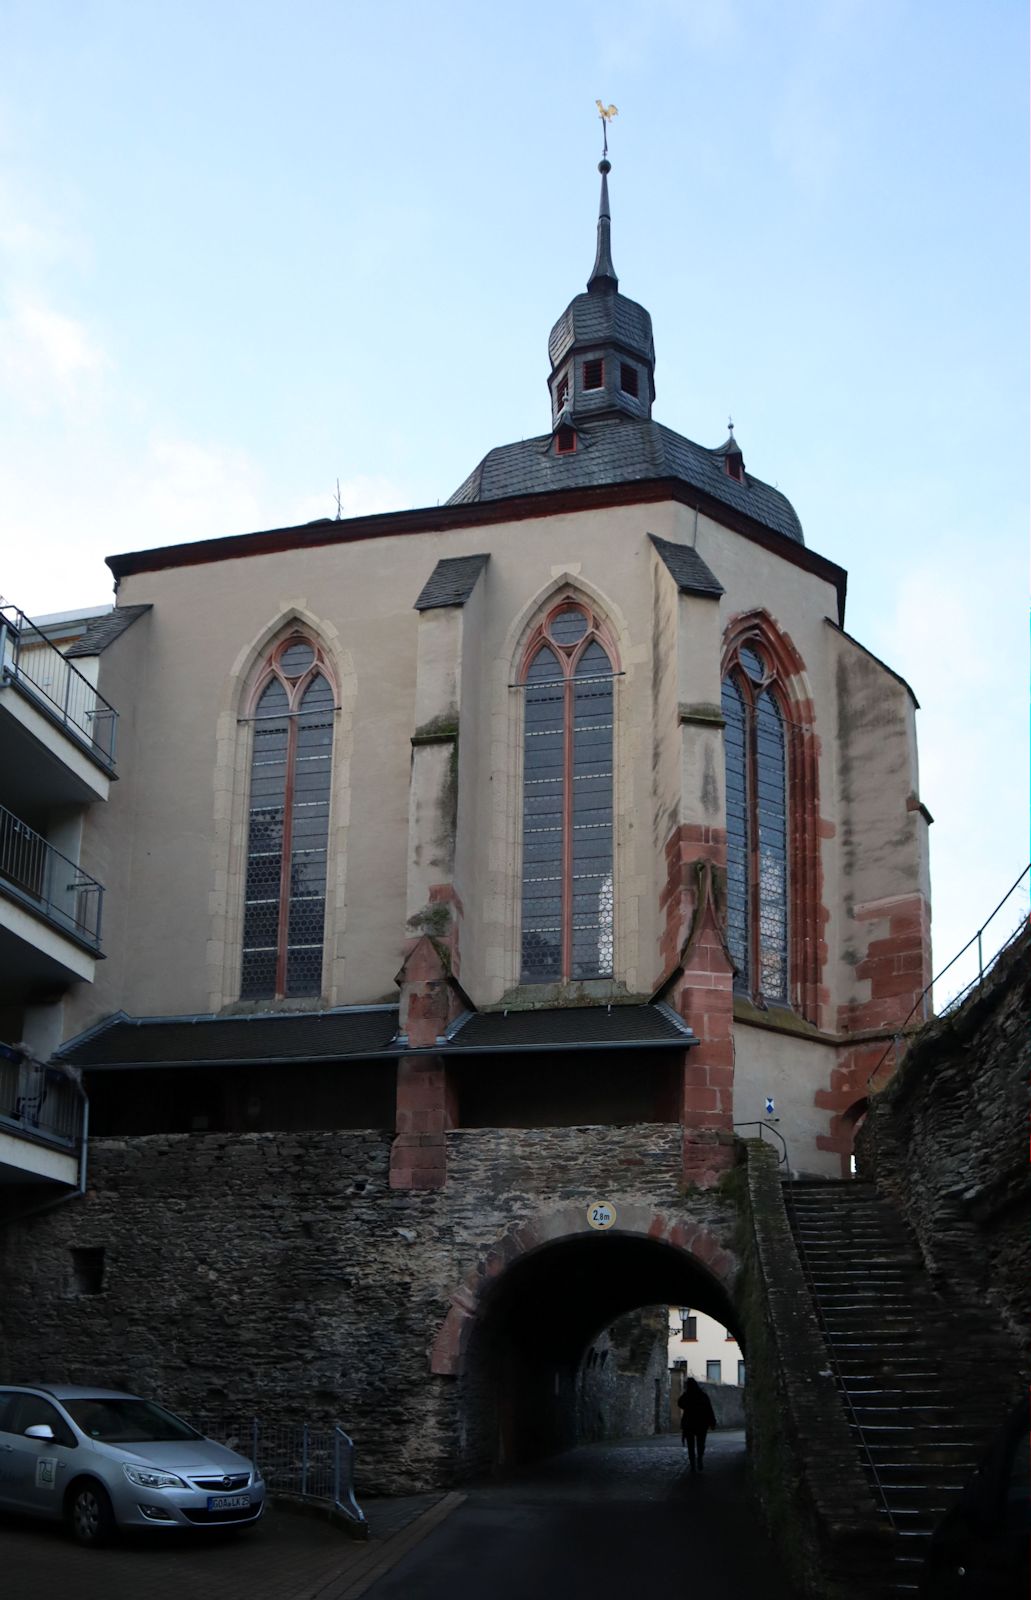 frühere Werner-Kapelle in Oberwesel - gebaut als Hospitalkirche, von der nur der Chor erhalten ist